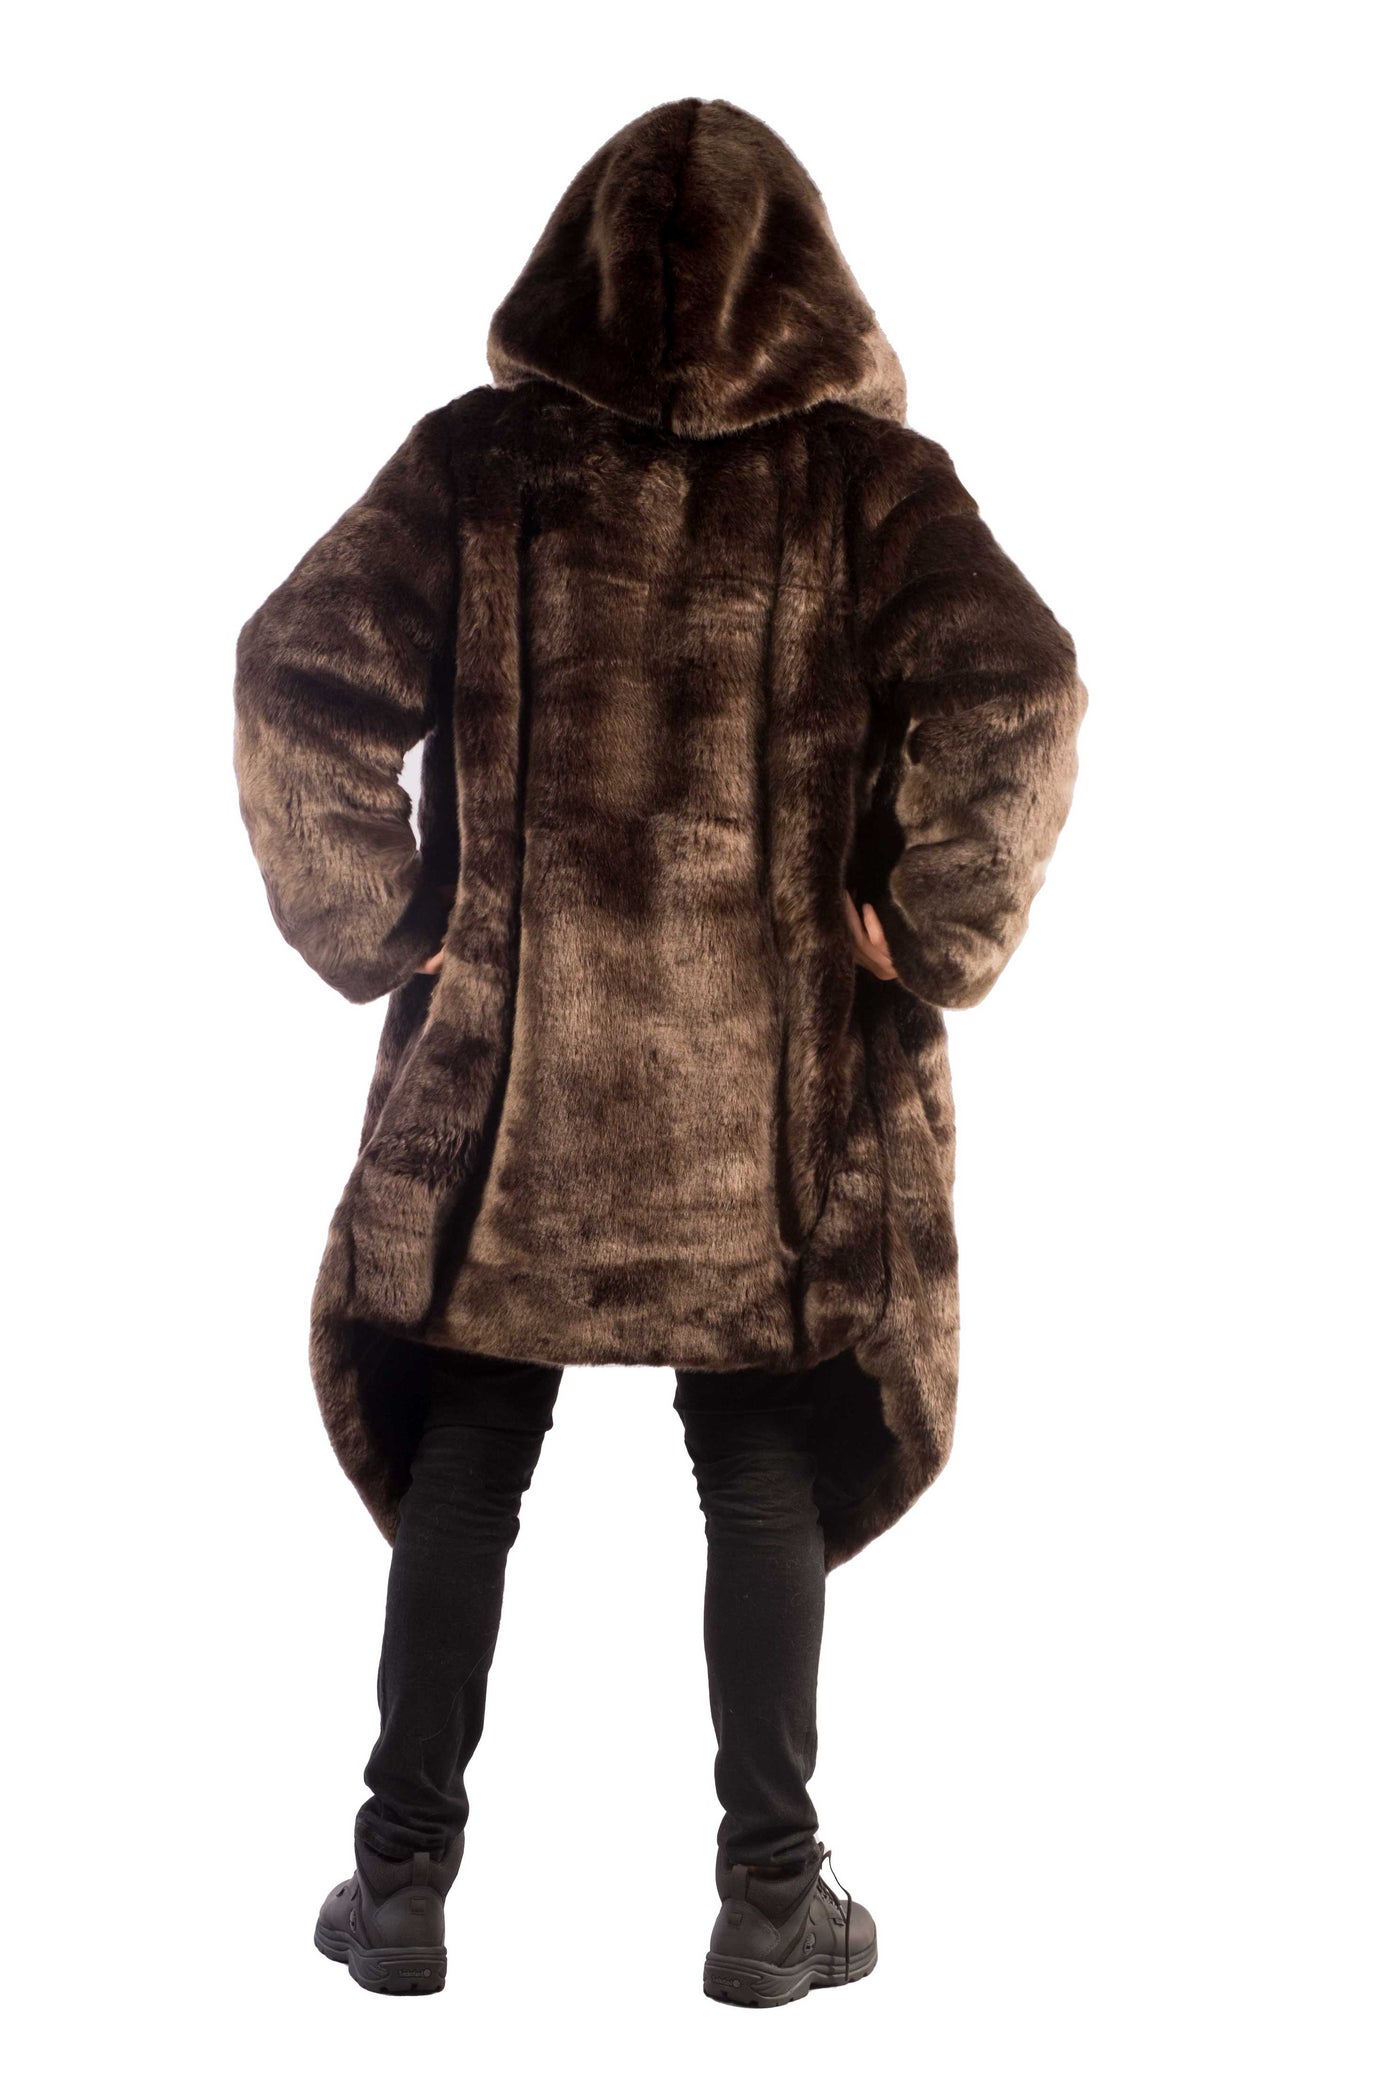 Men's Desert Warrior Coat in "Moose" Chinchilla